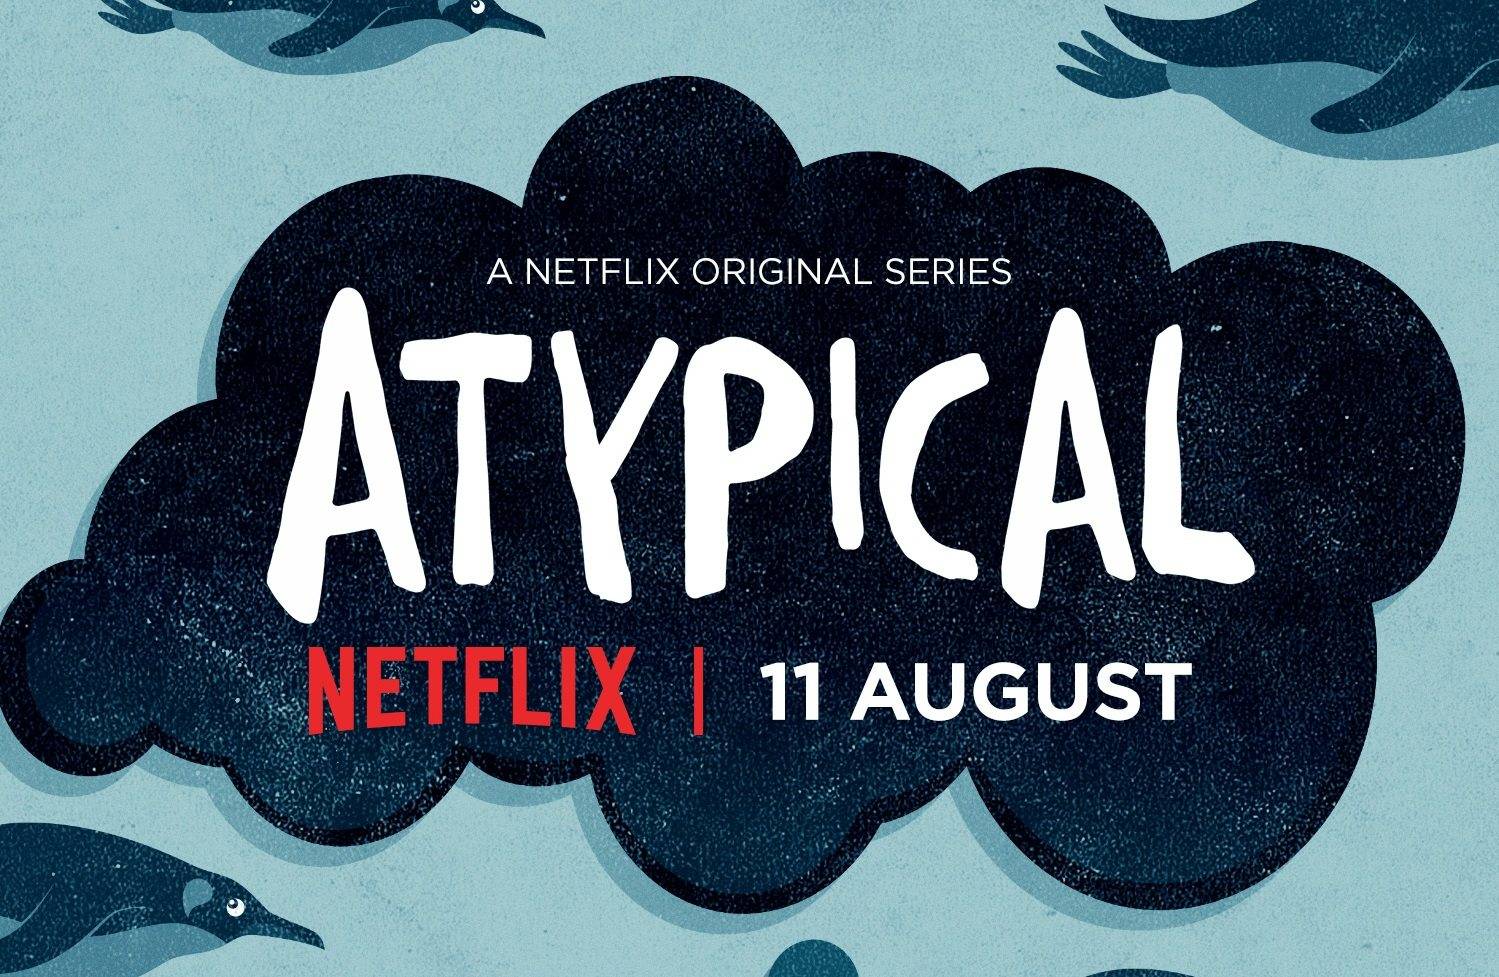 Atypical (Season 1) / Atypical (Season 1) (2017)